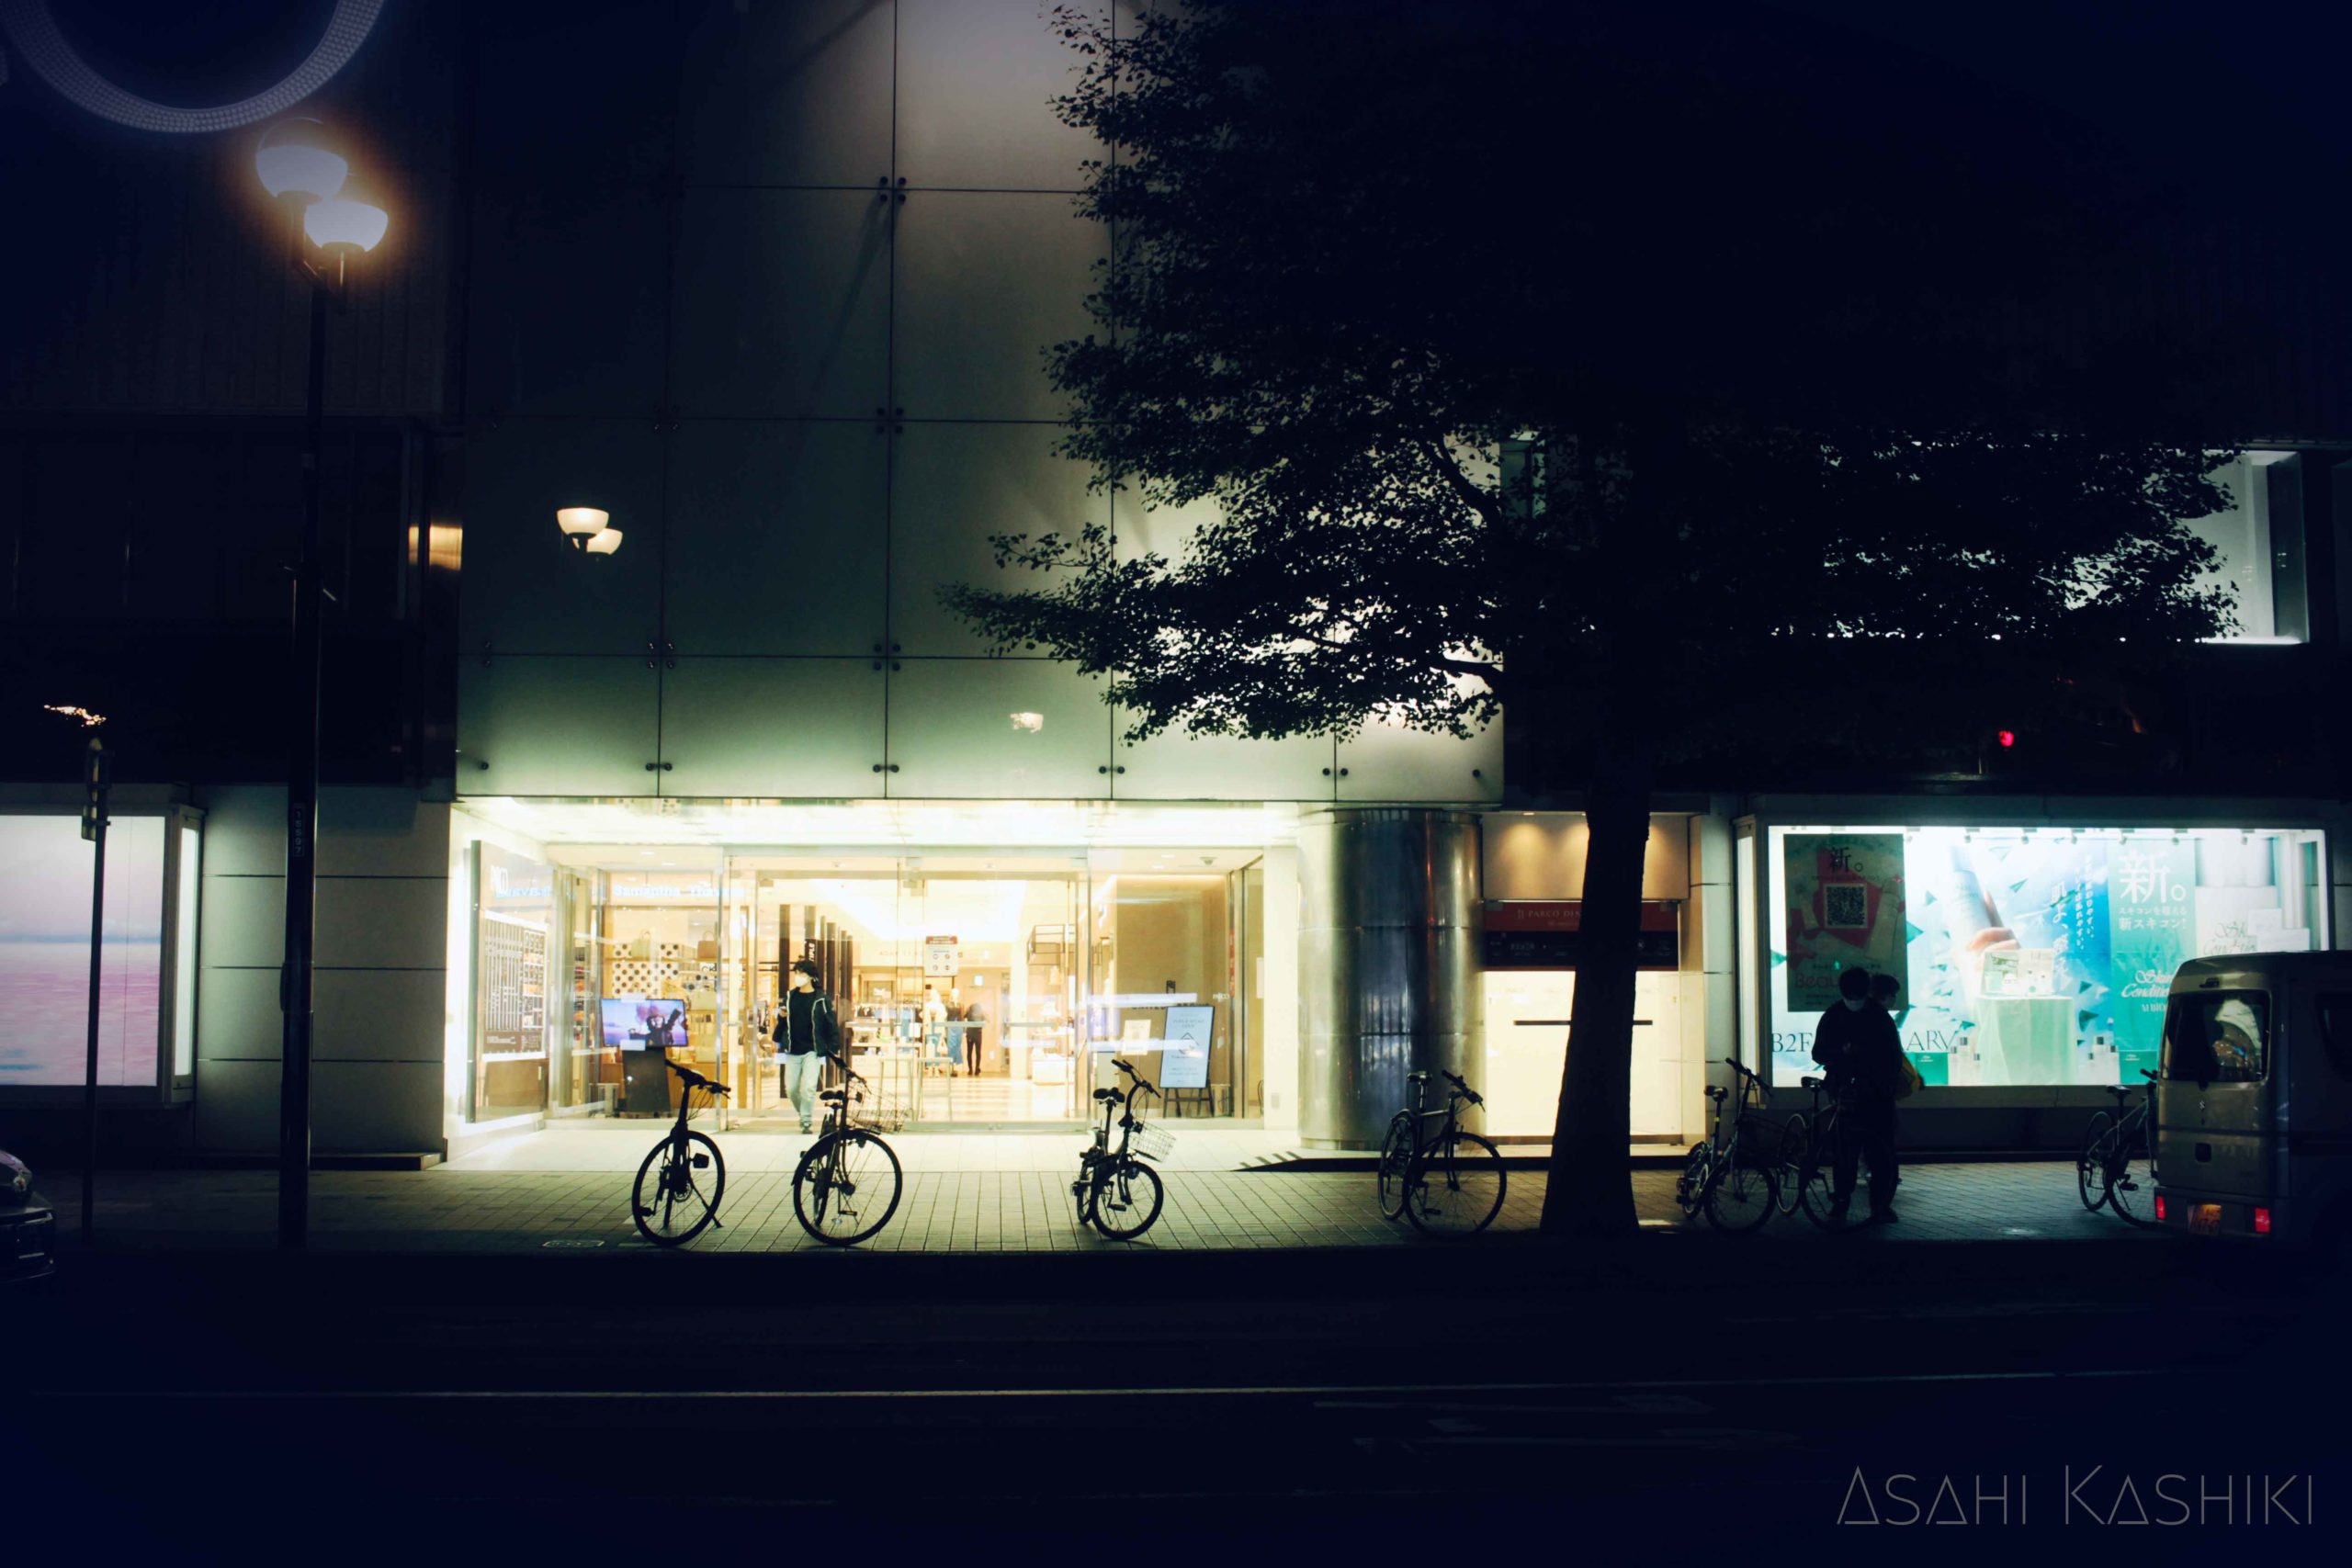 閉店間際のデパートから出てくる人の影と、その前に並ぶ自転車